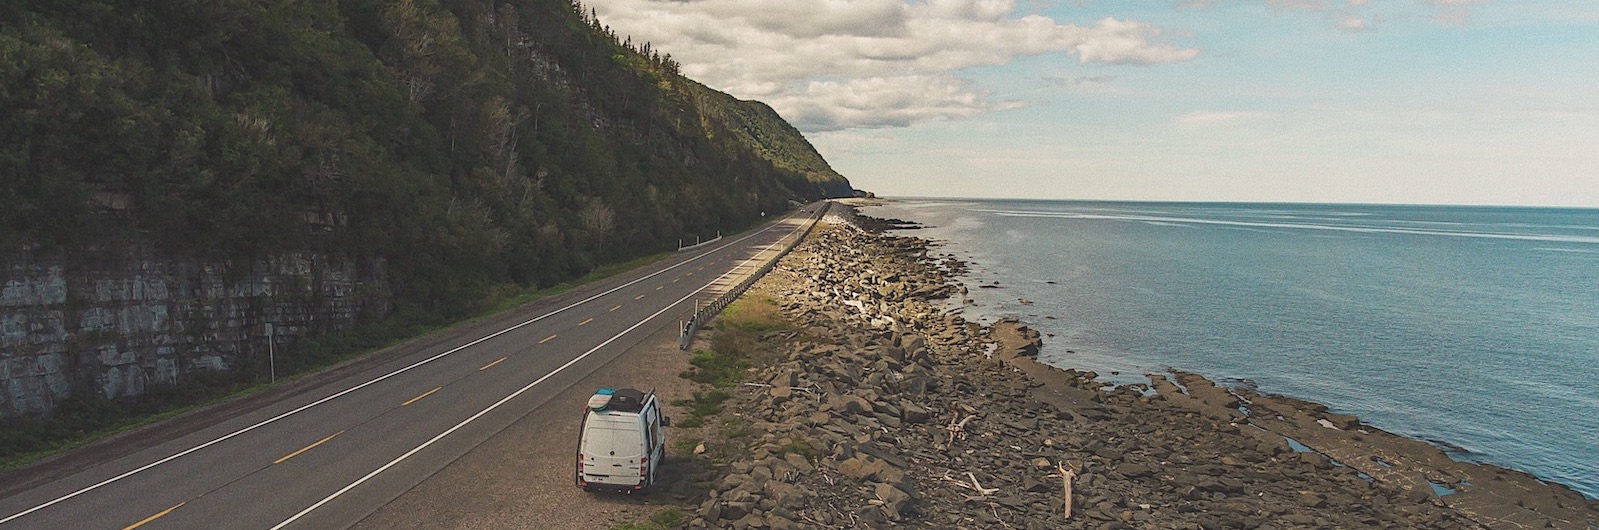 La Gaspésie en van: road trip plein air 